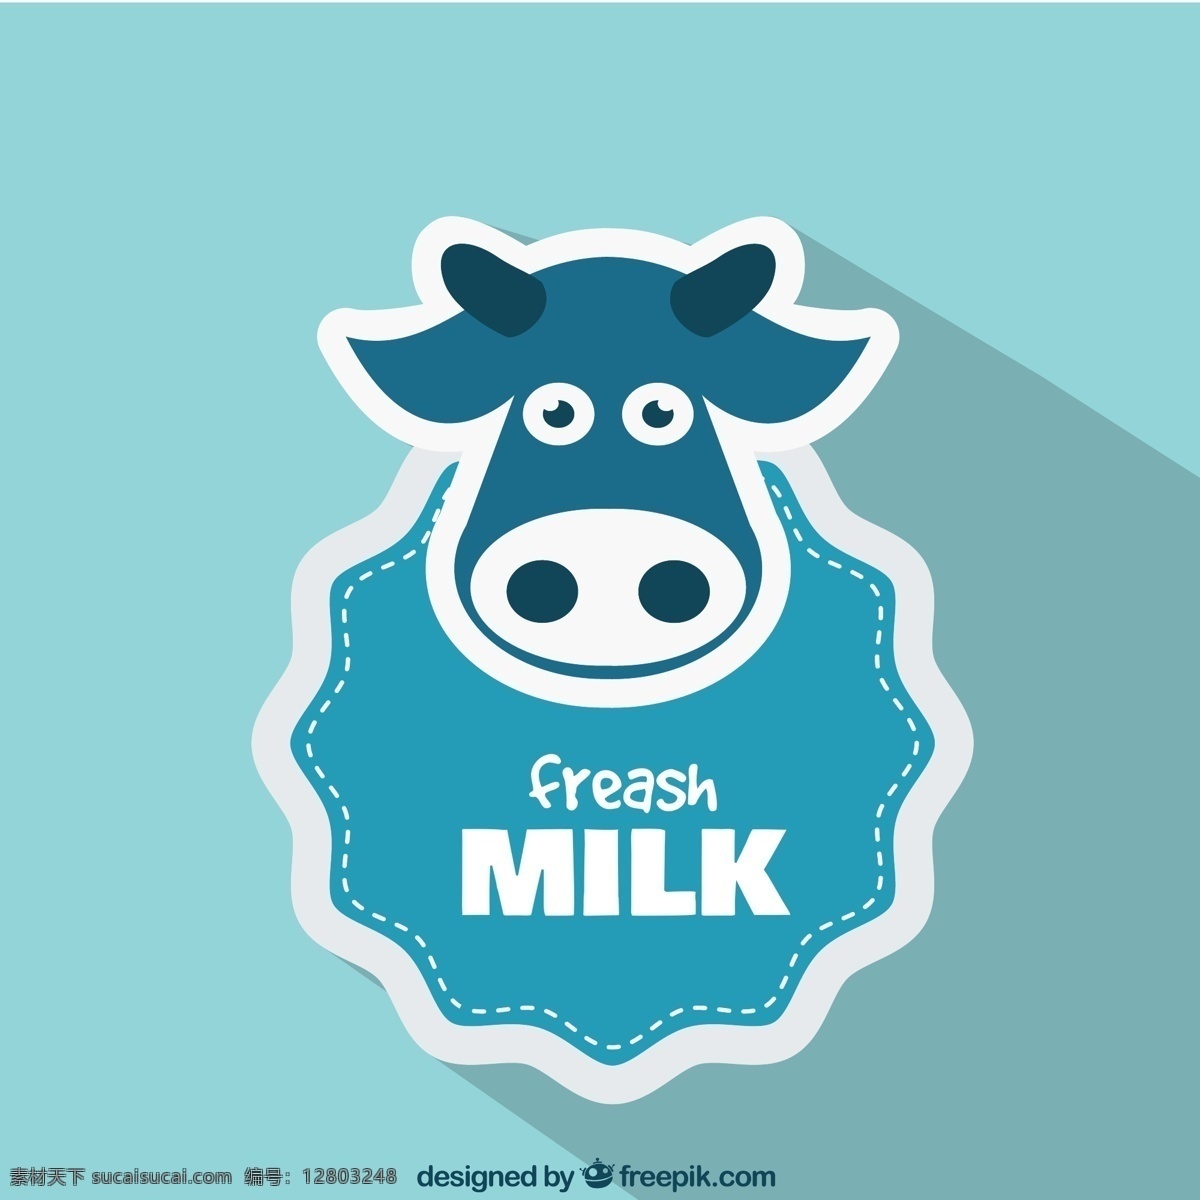 新鲜牛奶标签 新鲜 牛奶 标签 奶牛 牛 图标 动物 剪纸 插画 背景 海报 画册 矢量动物 生物世界 家禽家畜